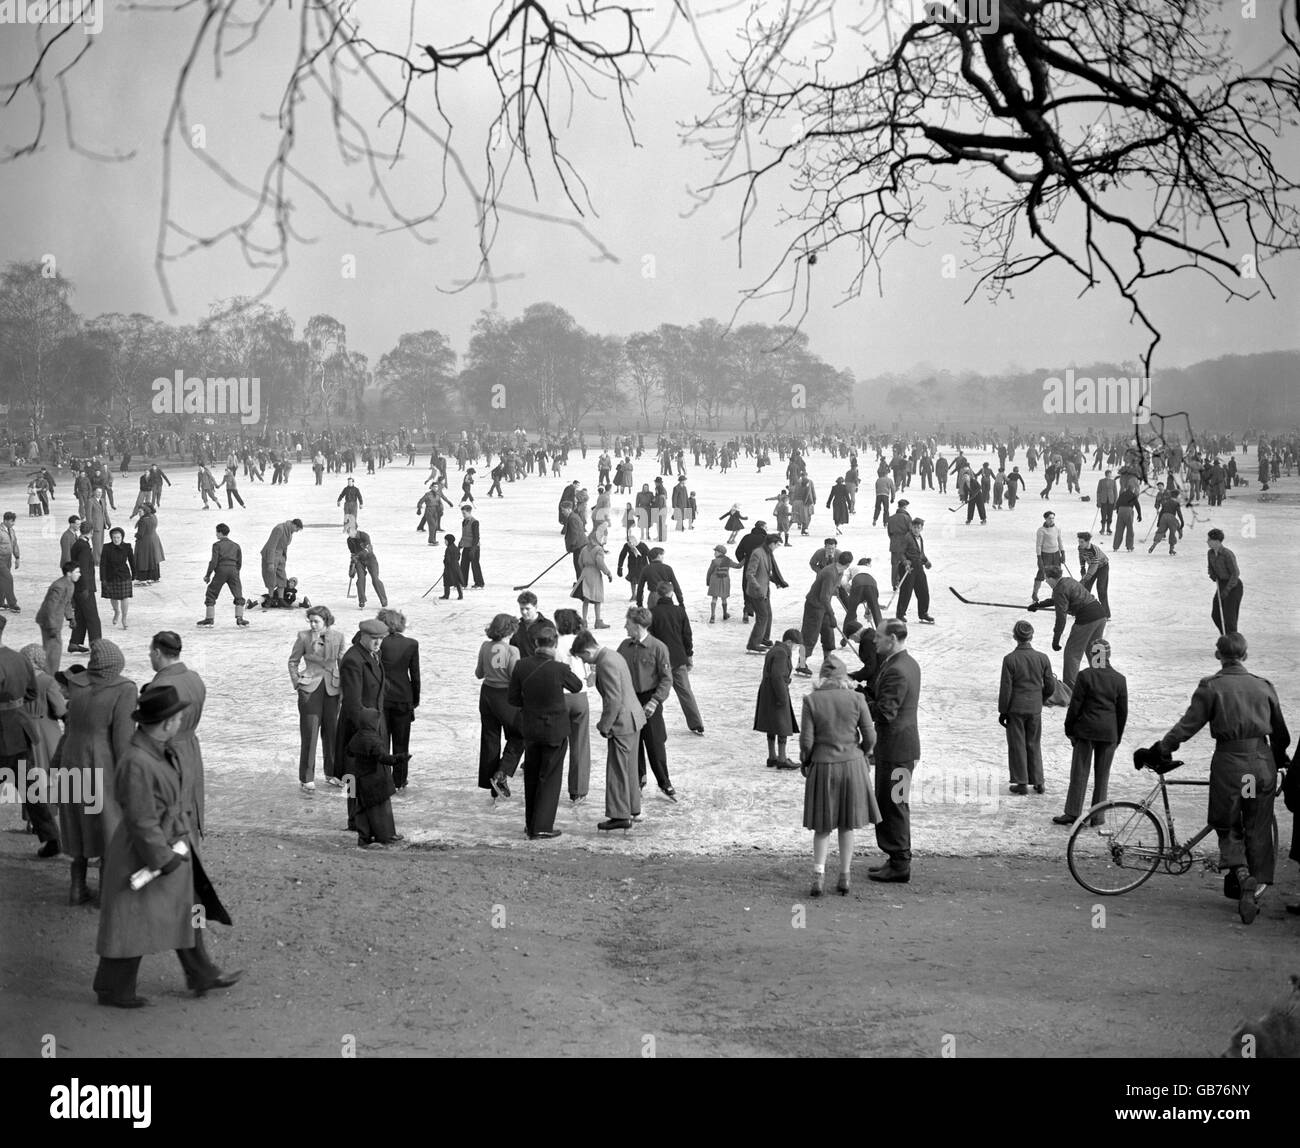 Menschen Eislaufen und Eishockey spielen auf dem gefrorenen Wimbledon Common Pond. Obwohl drei Menschen durch das Eis fielen, wurden die Skater nicht abgeschreckt. Stockfoto